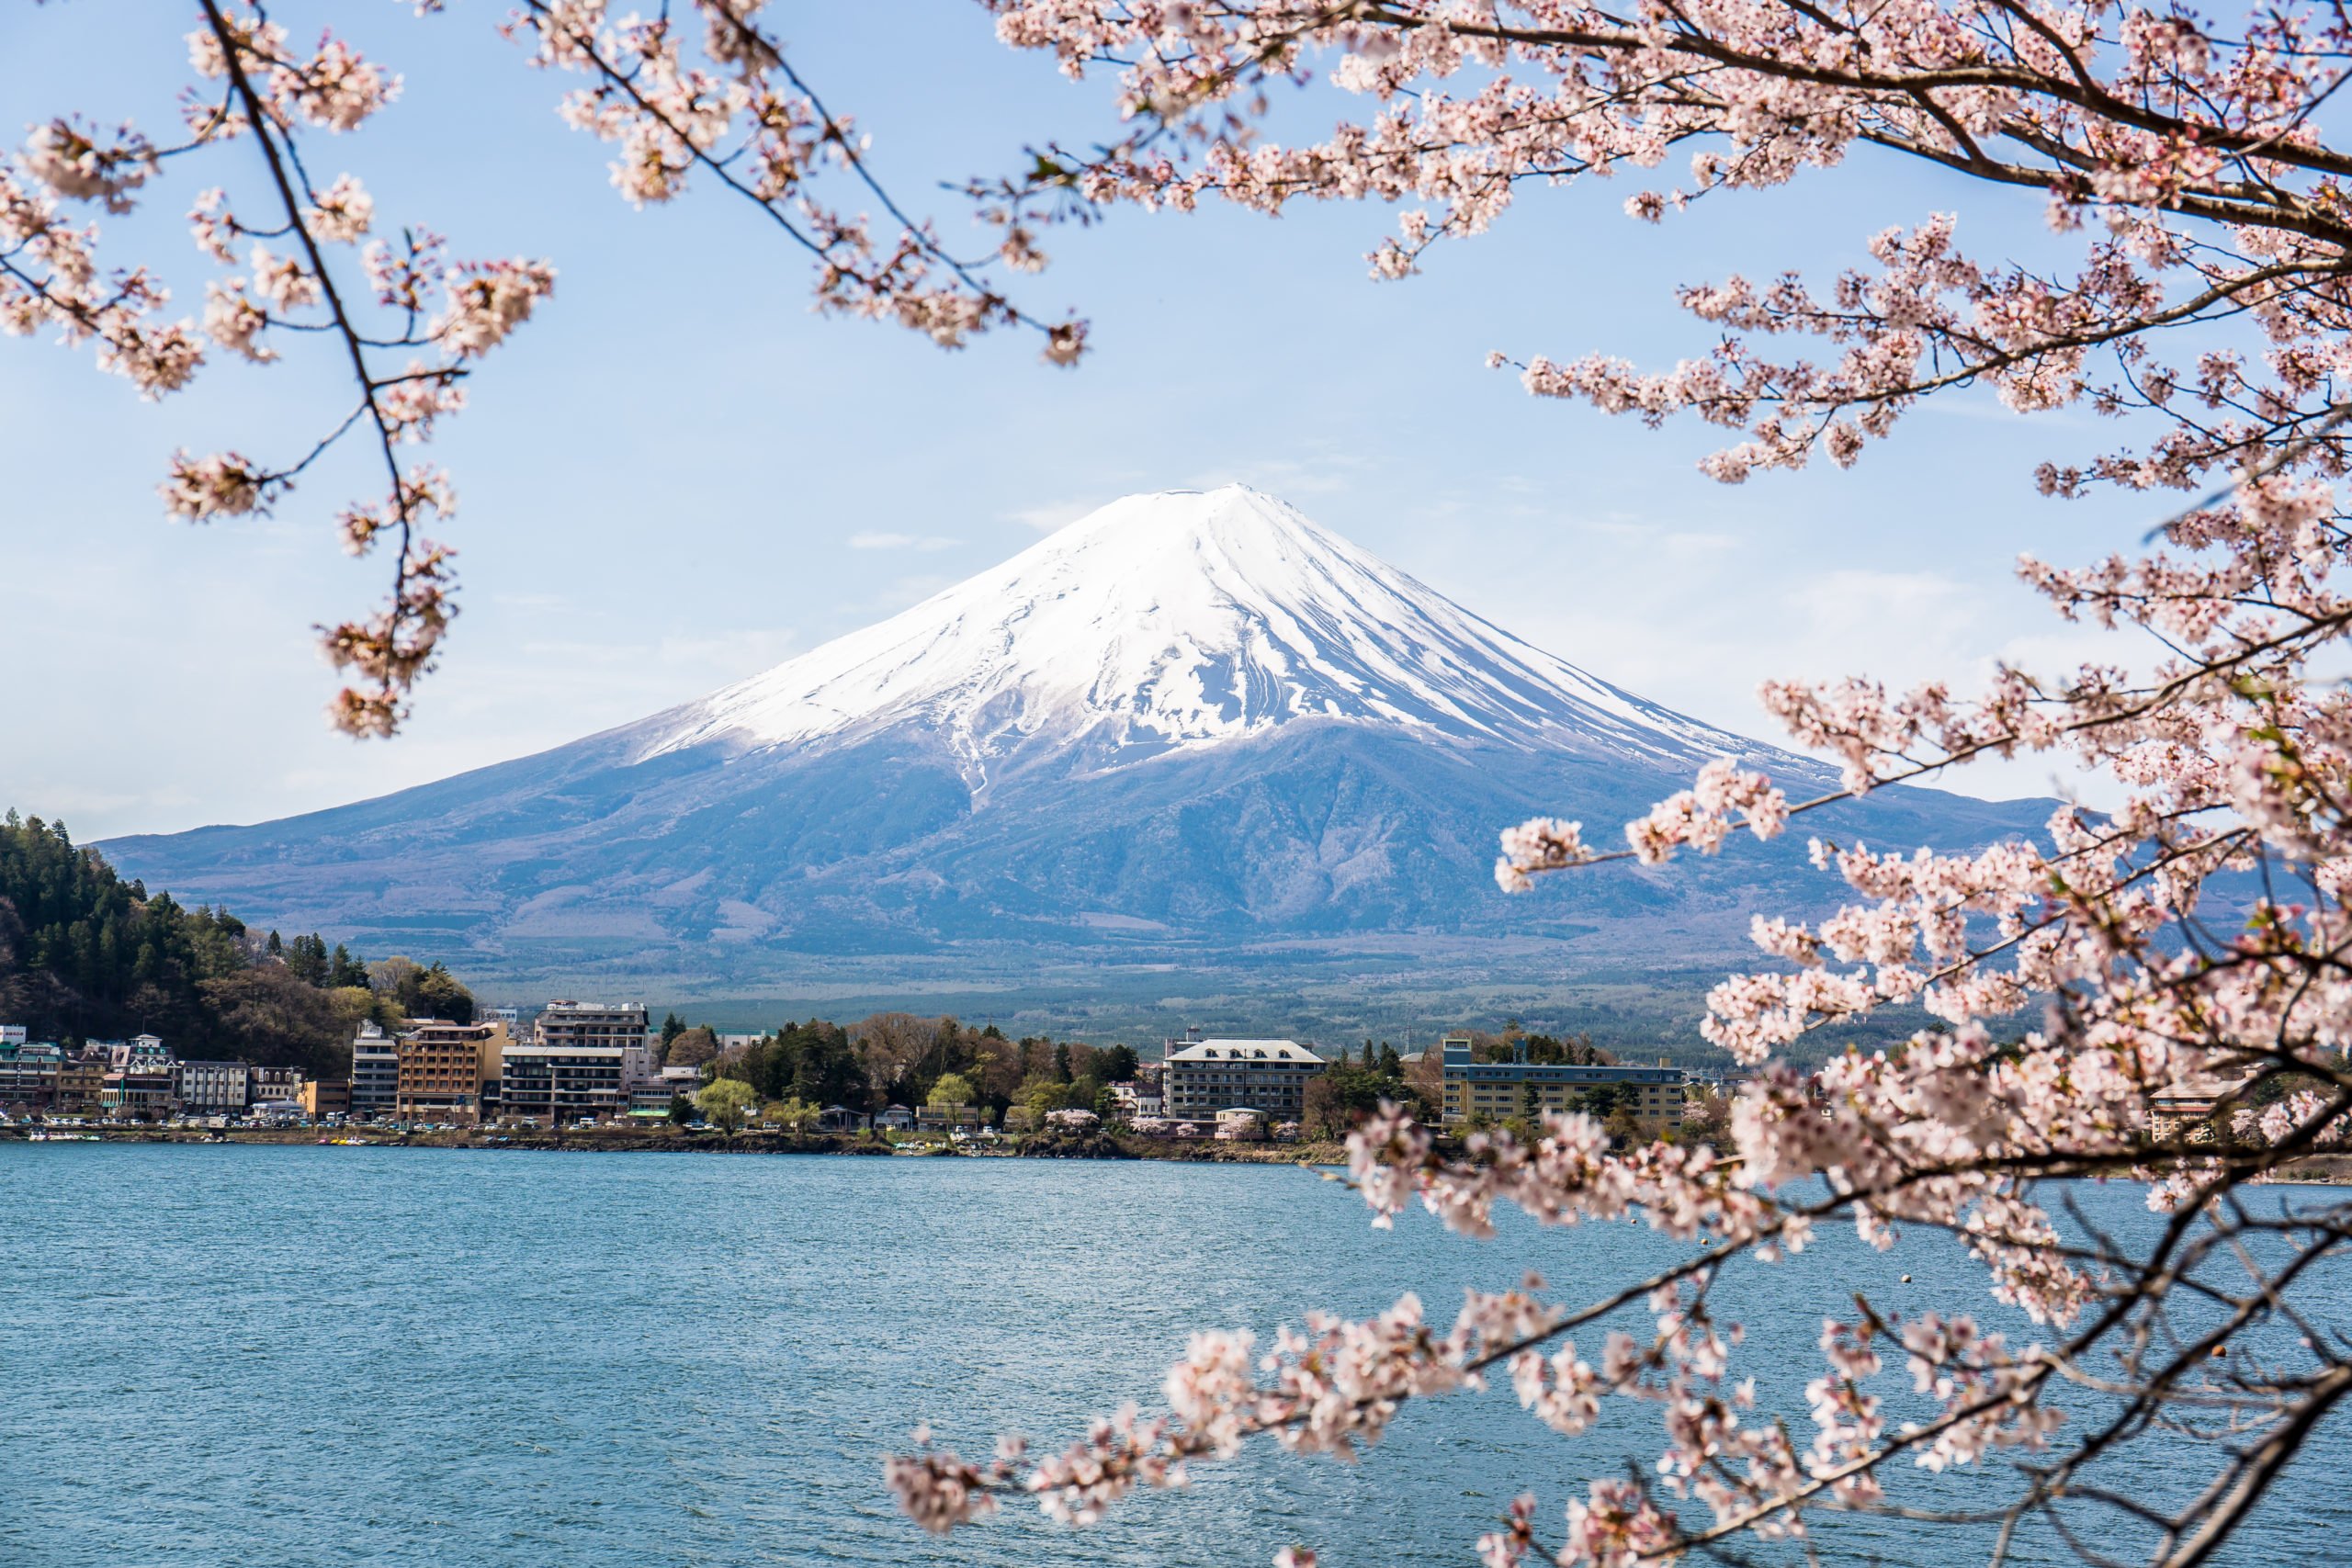 Mount Fuji, Hakone, Lake Ashi, And More Tour From Tokyo